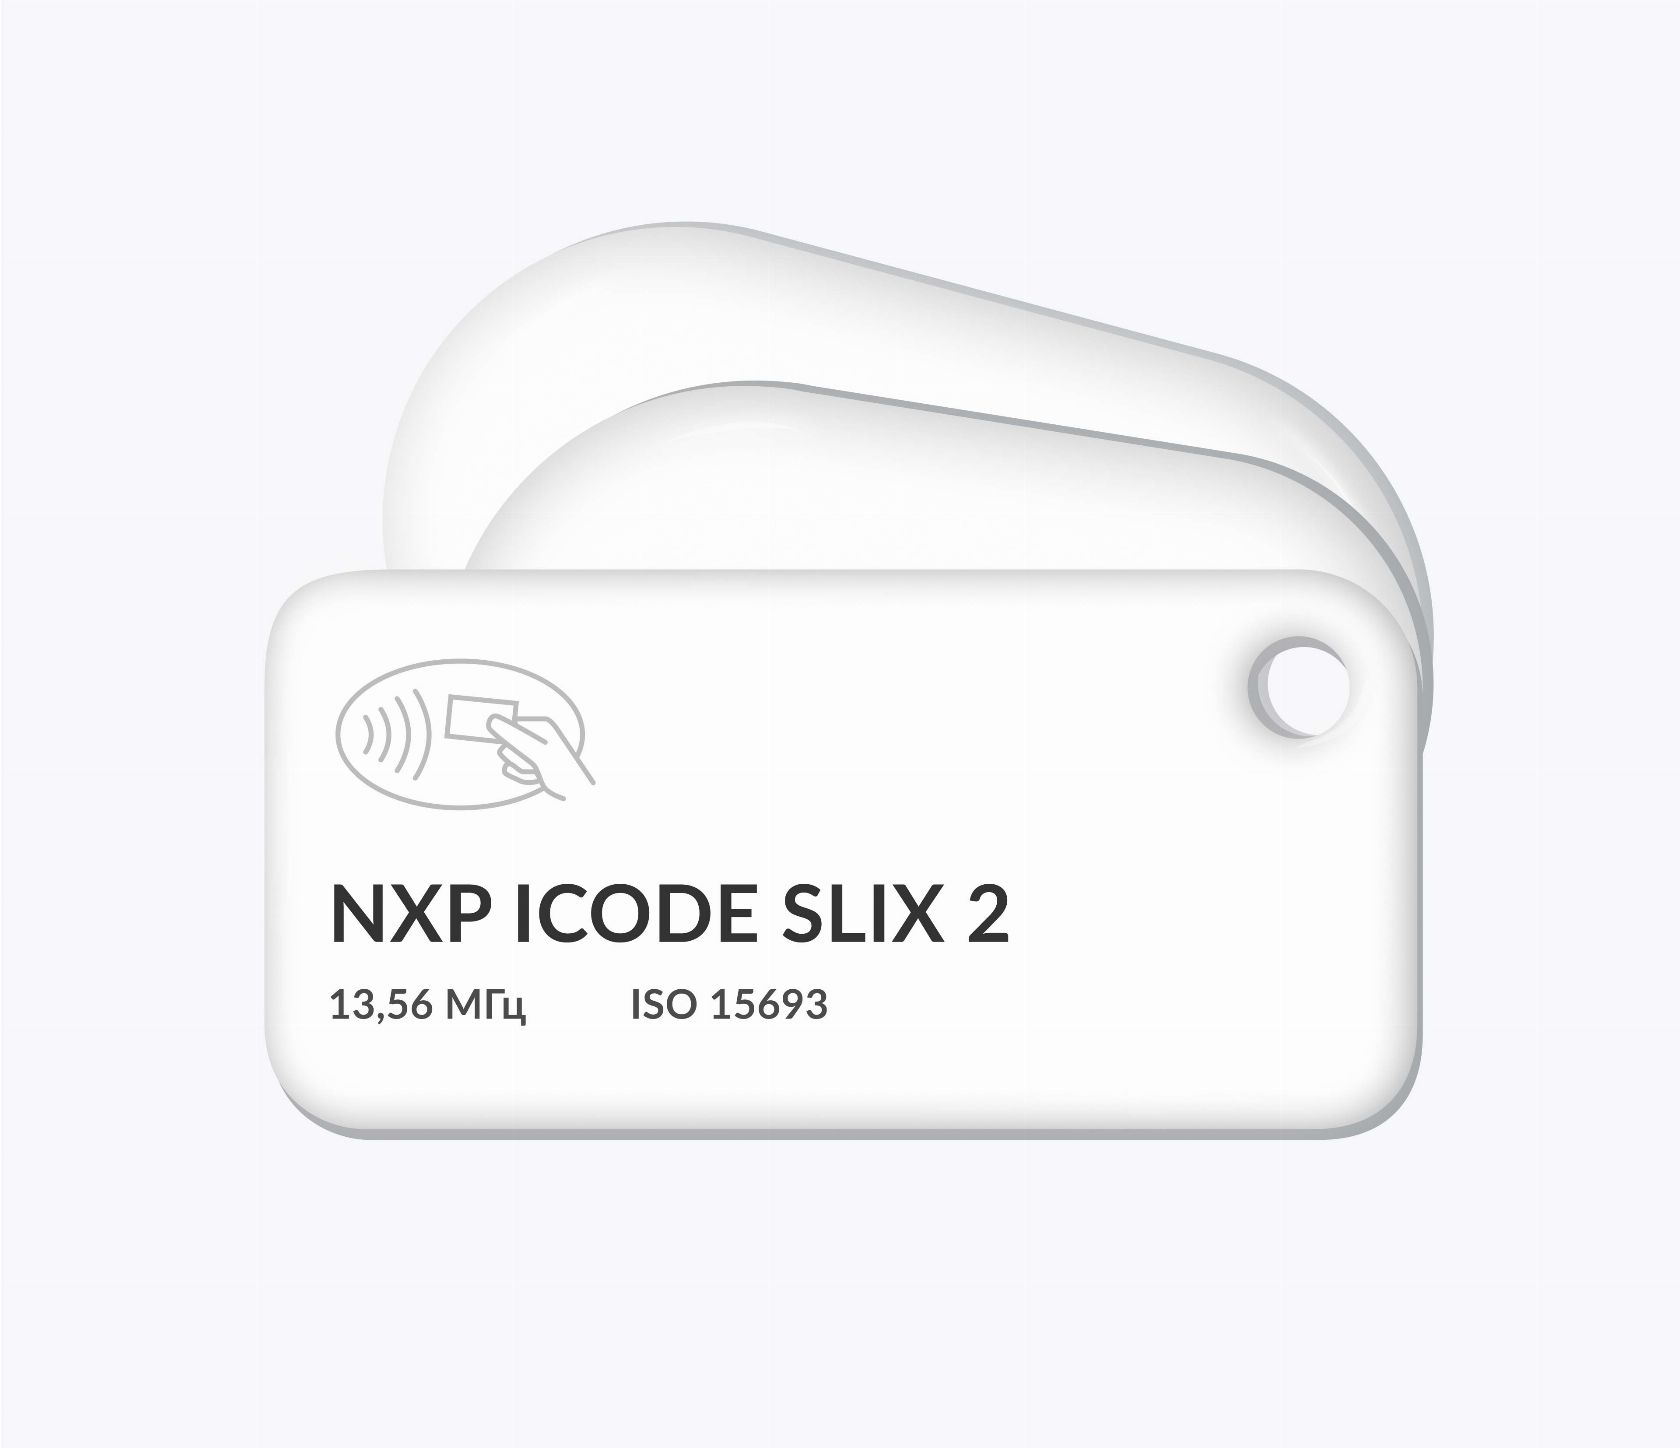 RFID-брелоки NEOKEY® с чипом NXP ICODE SLIX 2 и вашим логотипом RFID-брелоки NEOKEY® с чипом NXP ICODE SLIX 2